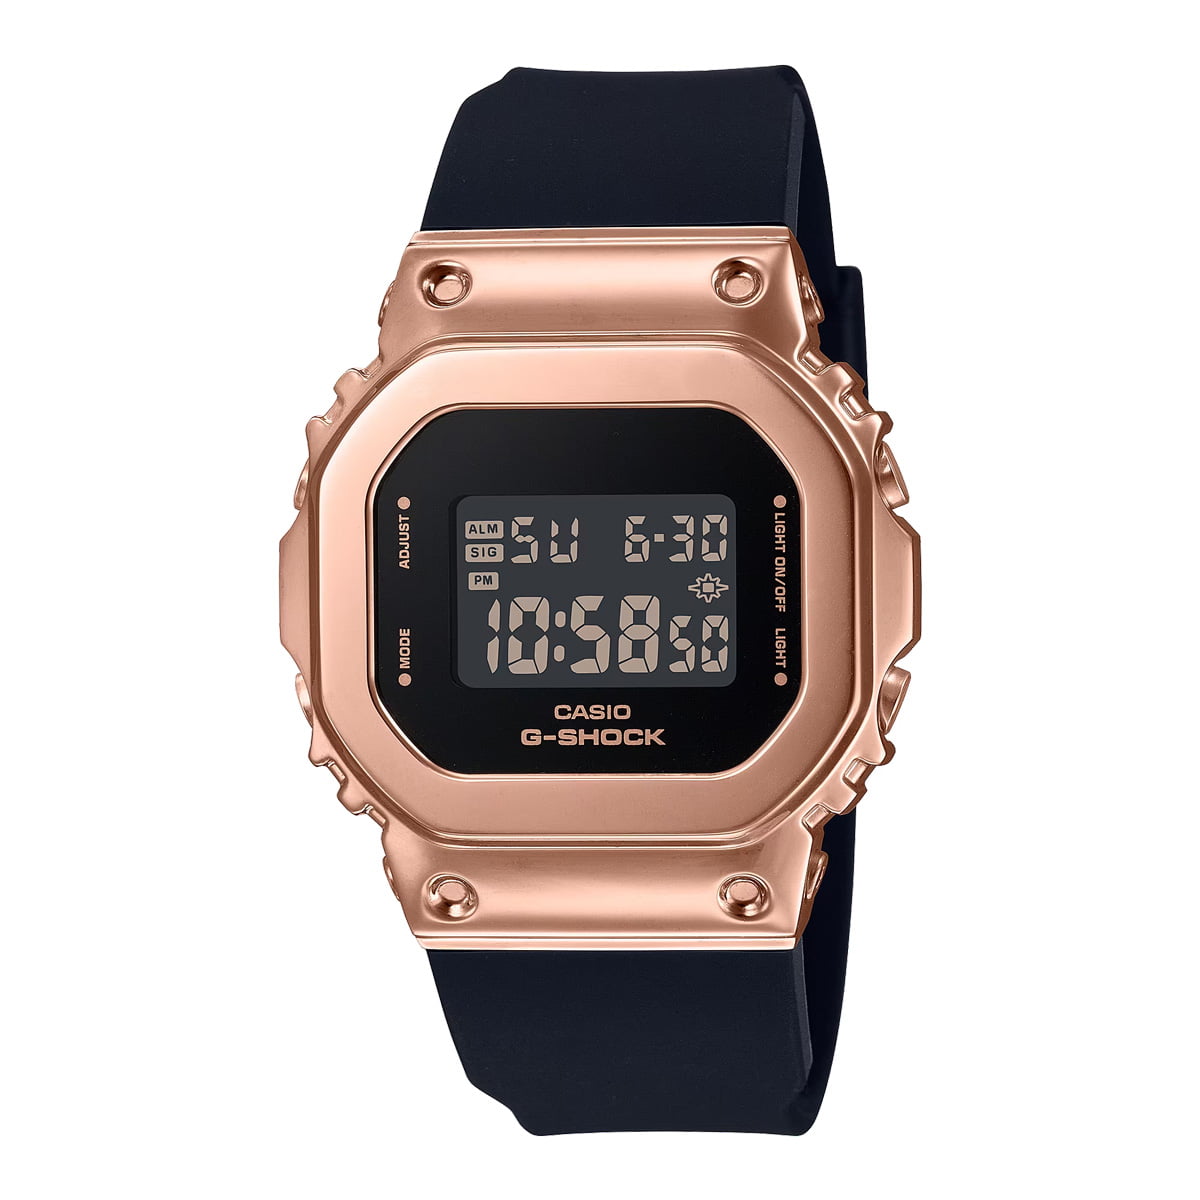 Đồng hồ G-Shock nữ GM-S5600PG-1